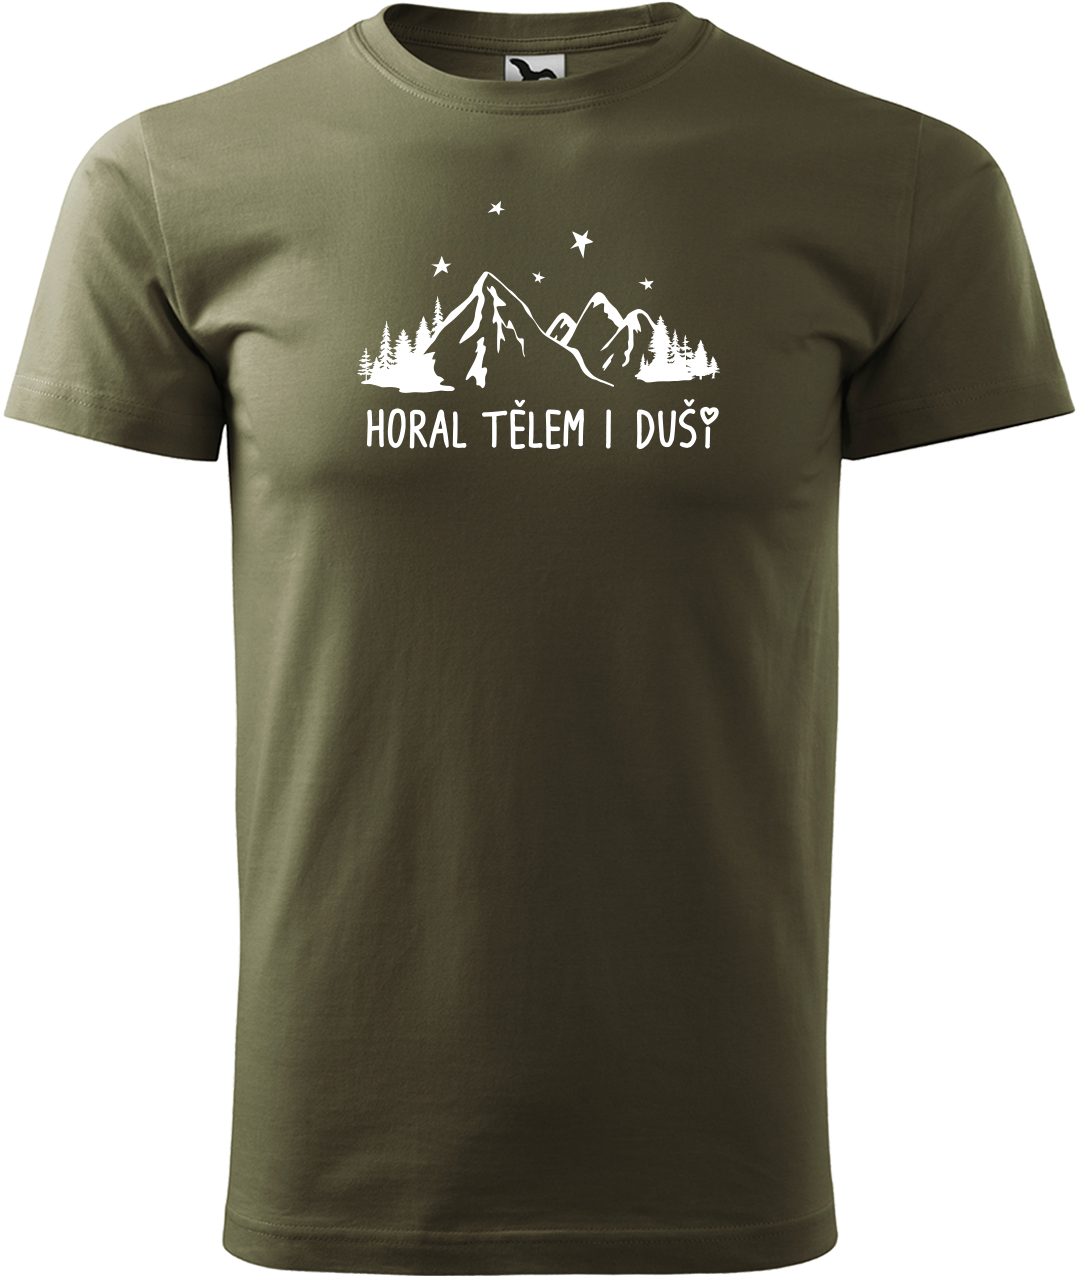 Pánské tričko na hory - Horal tělem i duší Velikost: XL, Barva: Military (69)